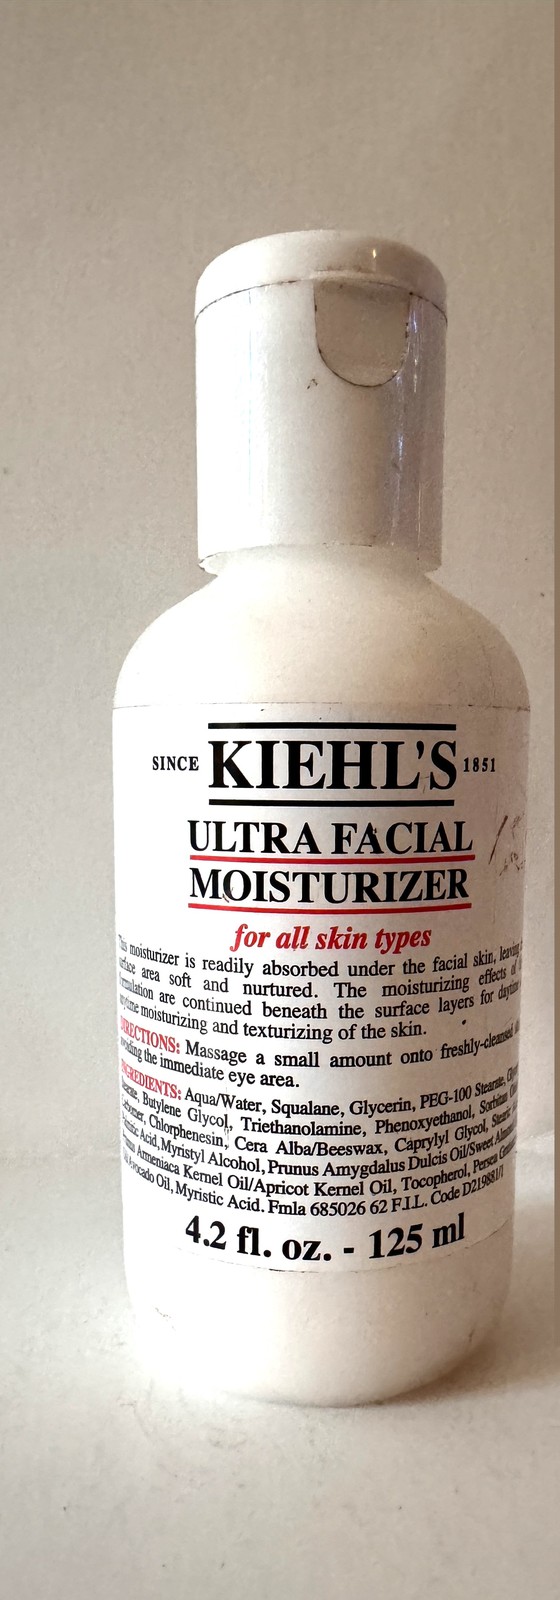 Kiehl's ultra facial moisturizer 4.2oz - $33.00